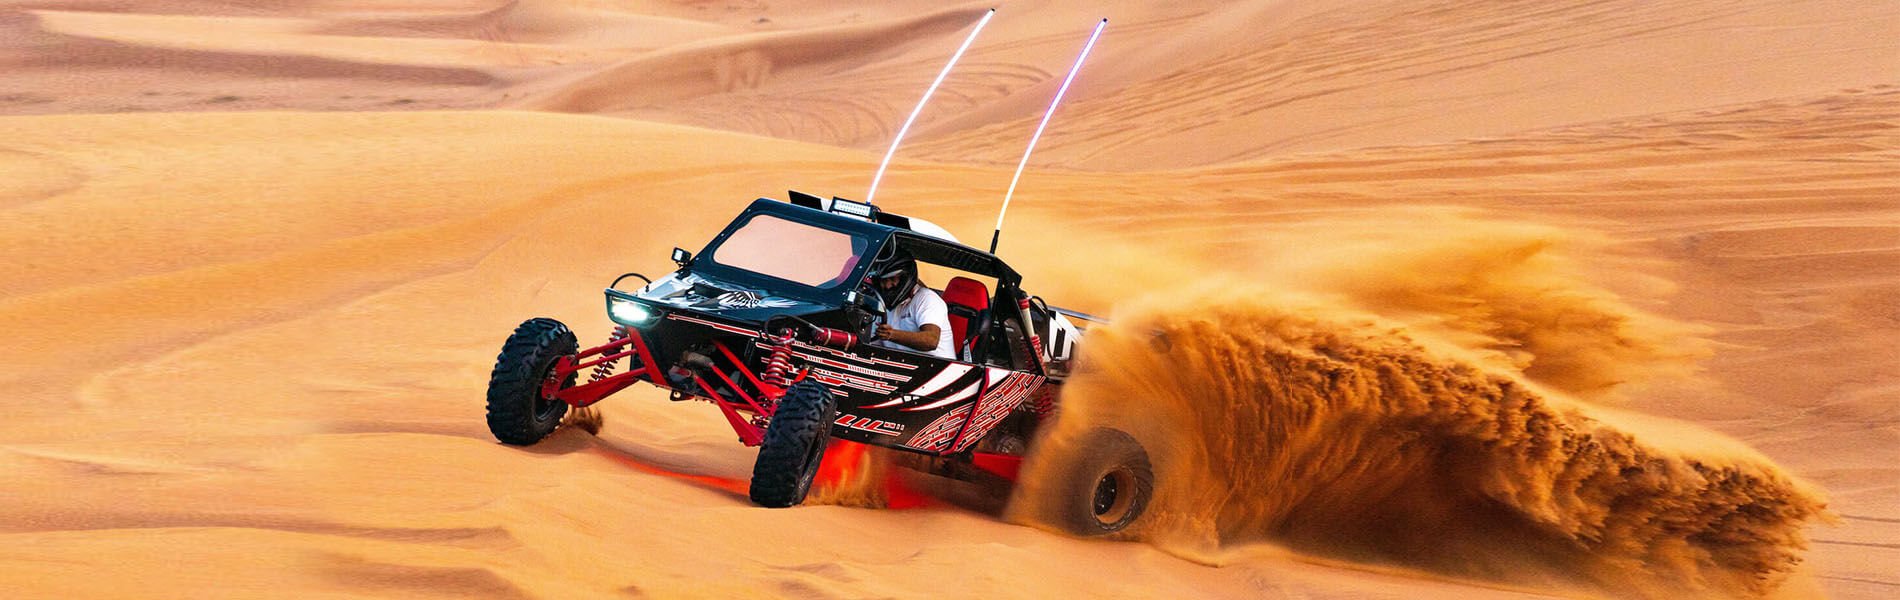 dune-buggy-safari-in-dubai